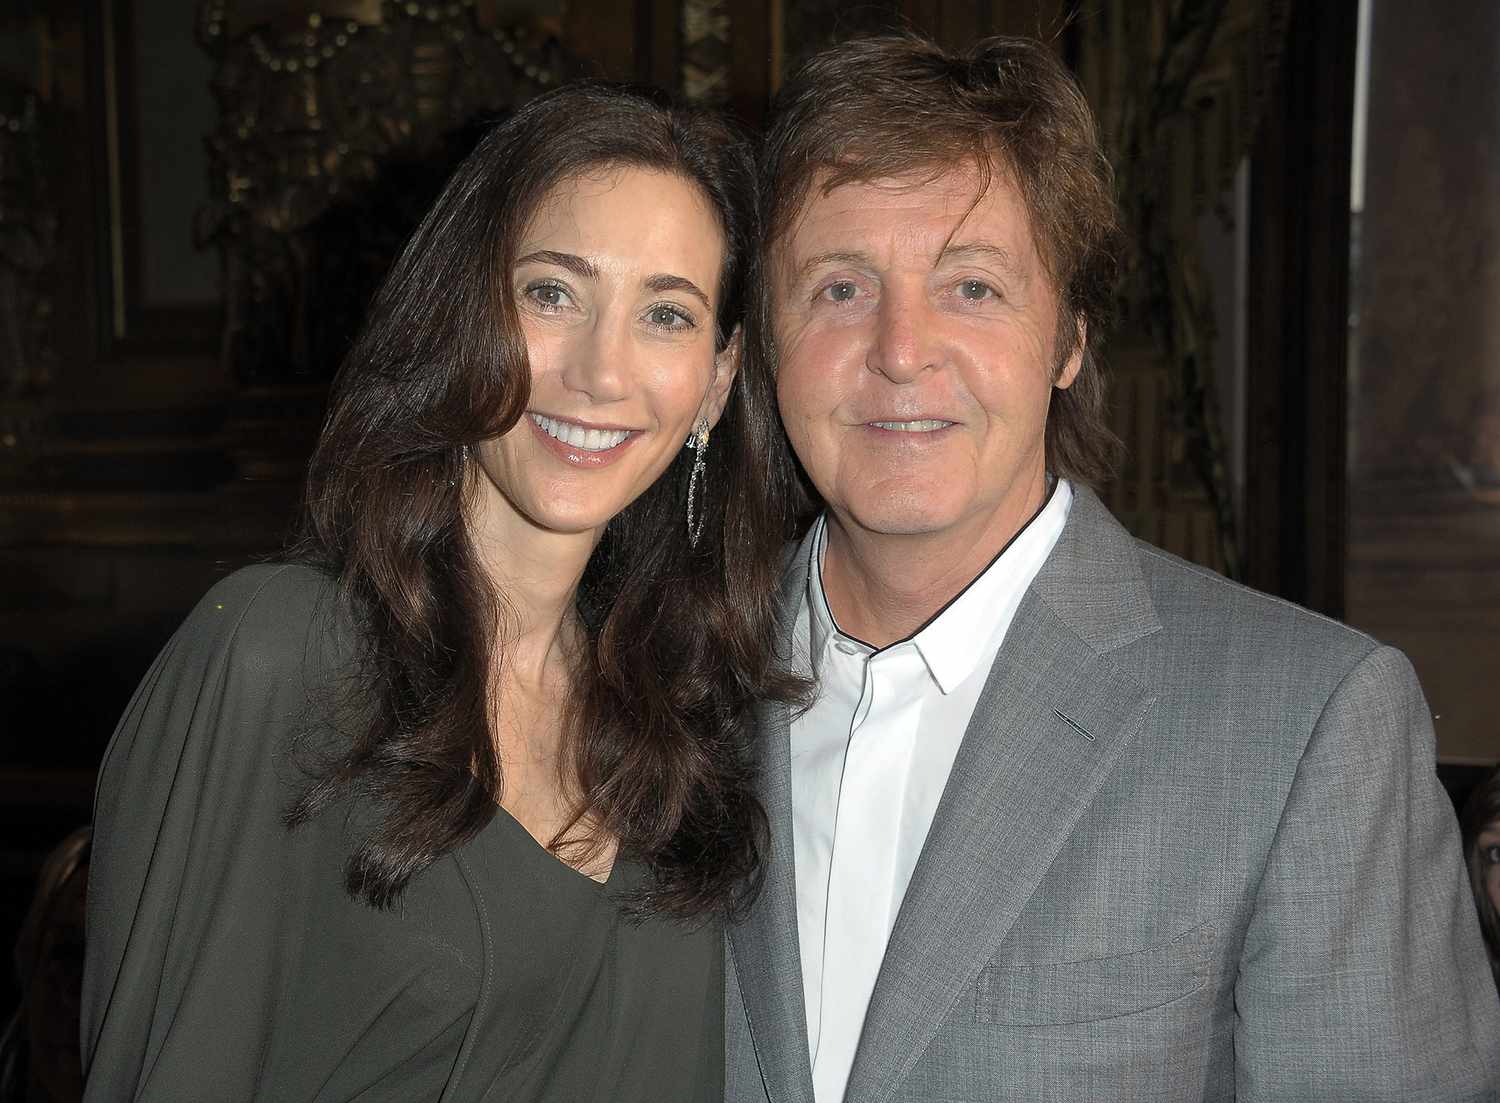 Paul McCartney sur le fait d'être «&nbsp;romantique&nbsp;» avec sa femme Nancy Shevell&nbsp;: «&nbsp;J'ai complètement exagéré la Saint-Valentin&nbsp;»